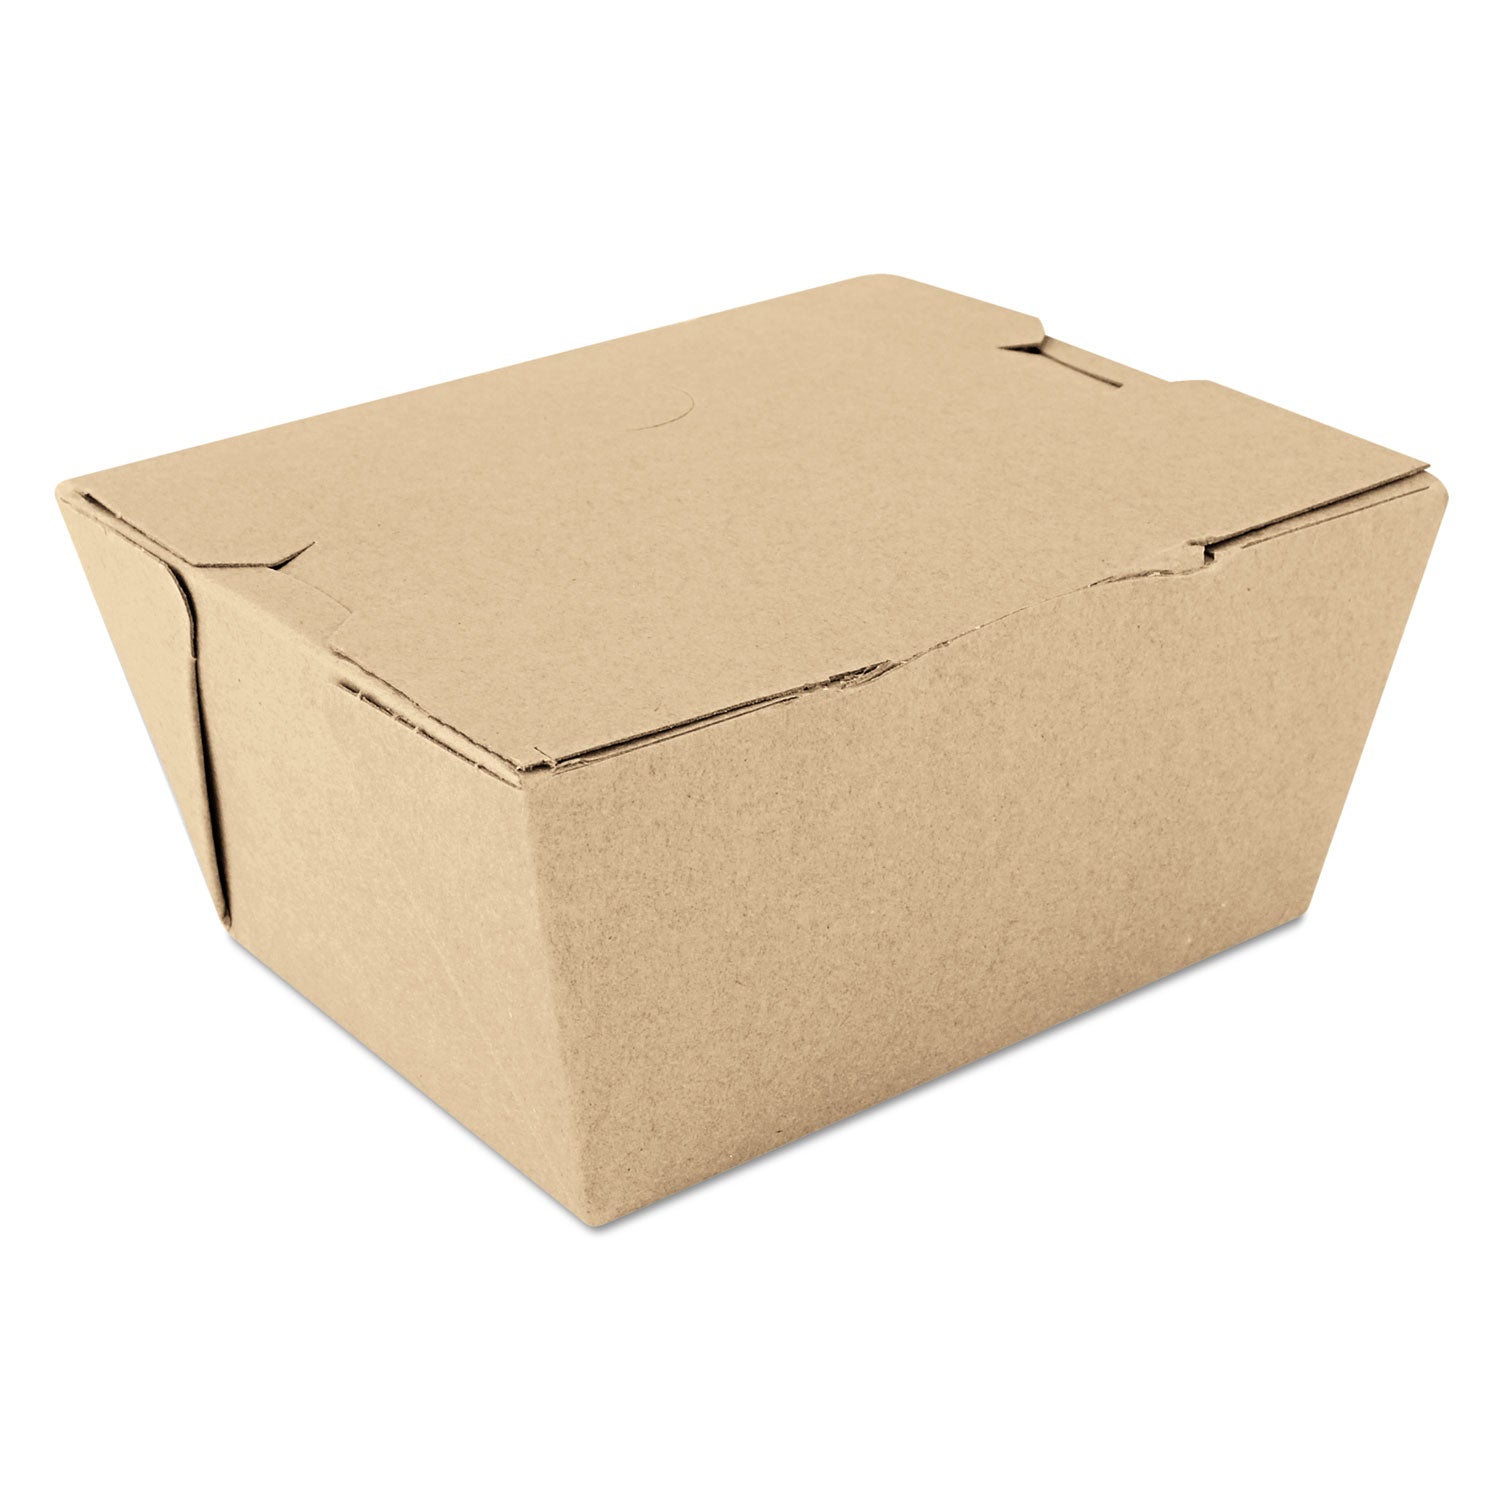 ChampPak Carryout Boxes, #1, 4.38 x 3.5 x 2.5, Kraft, Paper, 450/Carton - 